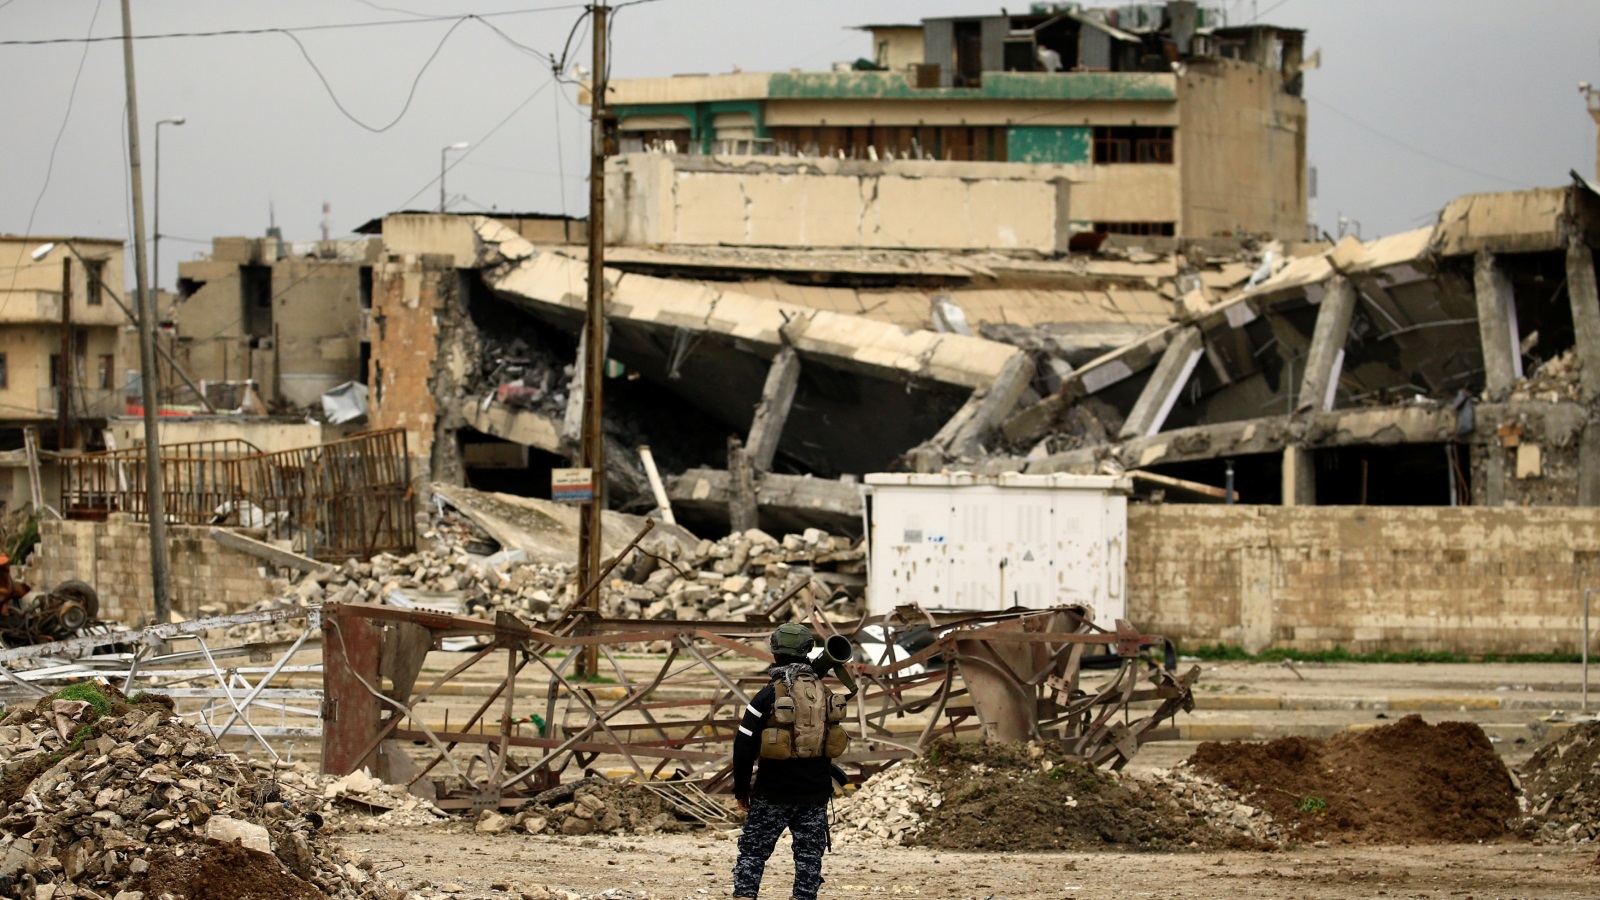 ‪آثار الدمار الذي خلفته المعارك والقصف الجوي والمدفعي على أحياء الموصل الغربية‬ آثار الدمار الذي خلفته المعارك والقصف الجوي والمدفعي على أحياء الموصل الغربية (رويترز)